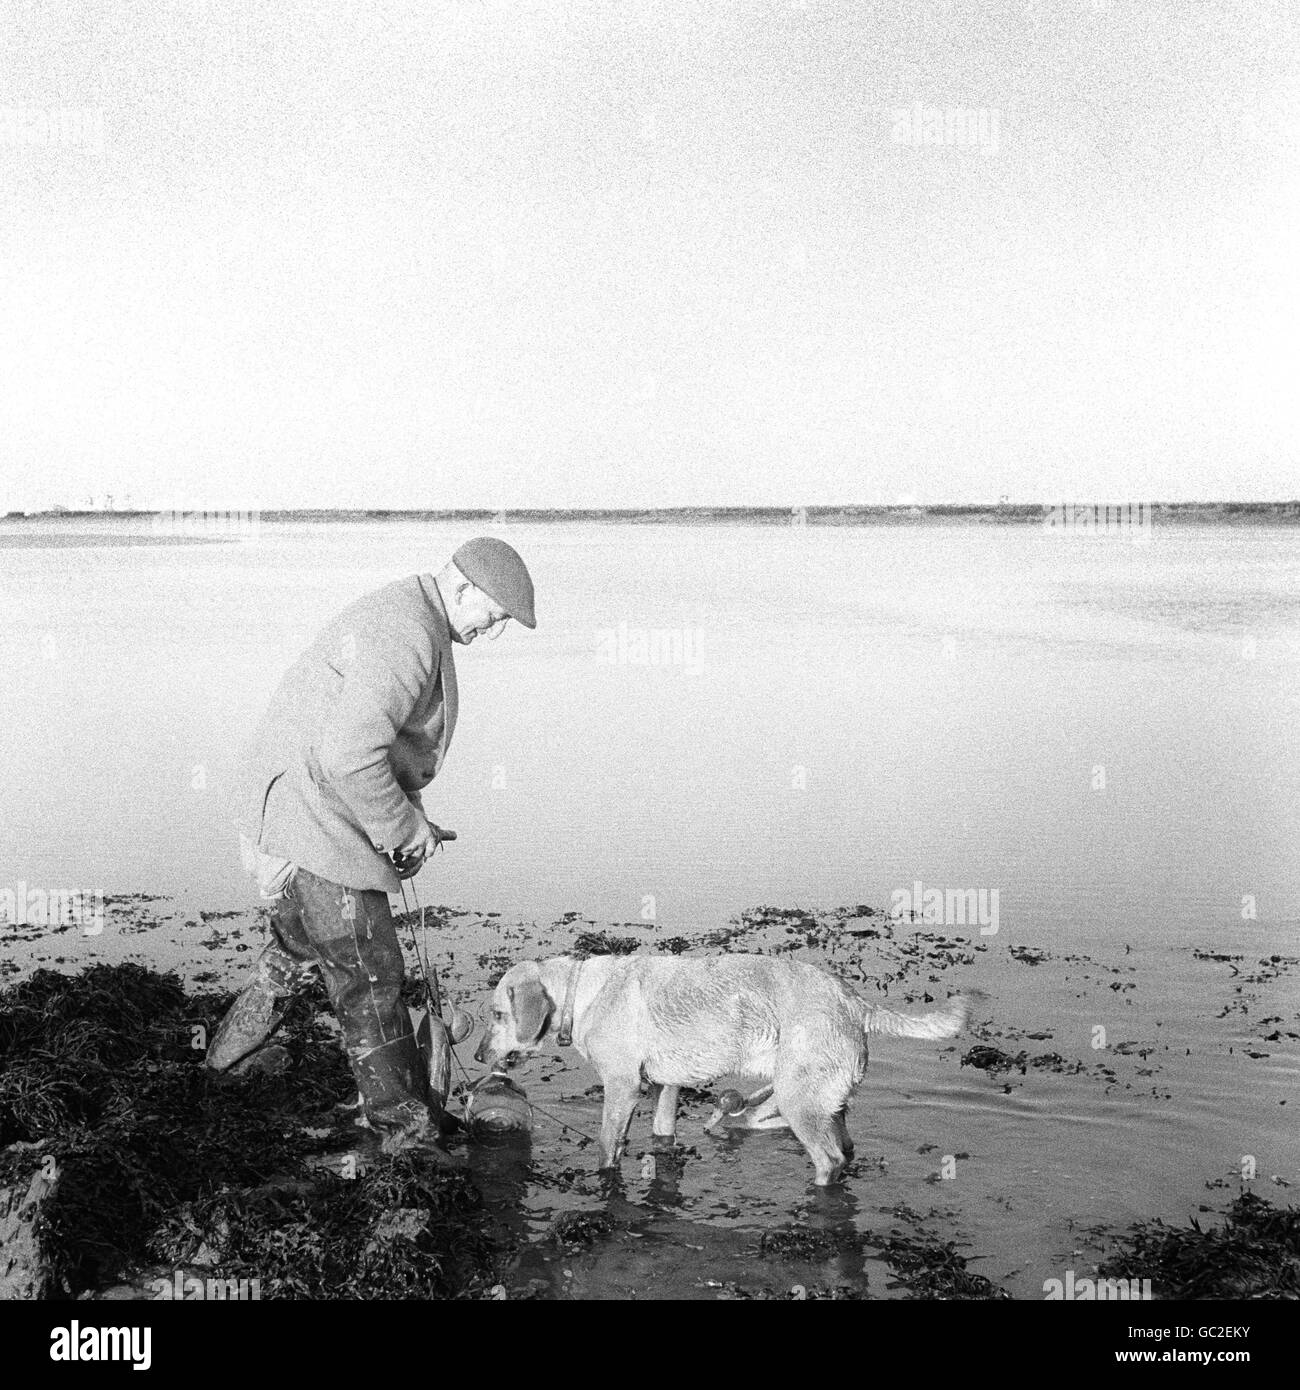 Dowser il cane che viene ingannato dalle anatre decoy e cerca di recuperarli, durante una caccia all'anatra sull'Isola di Grain. Foto Stock